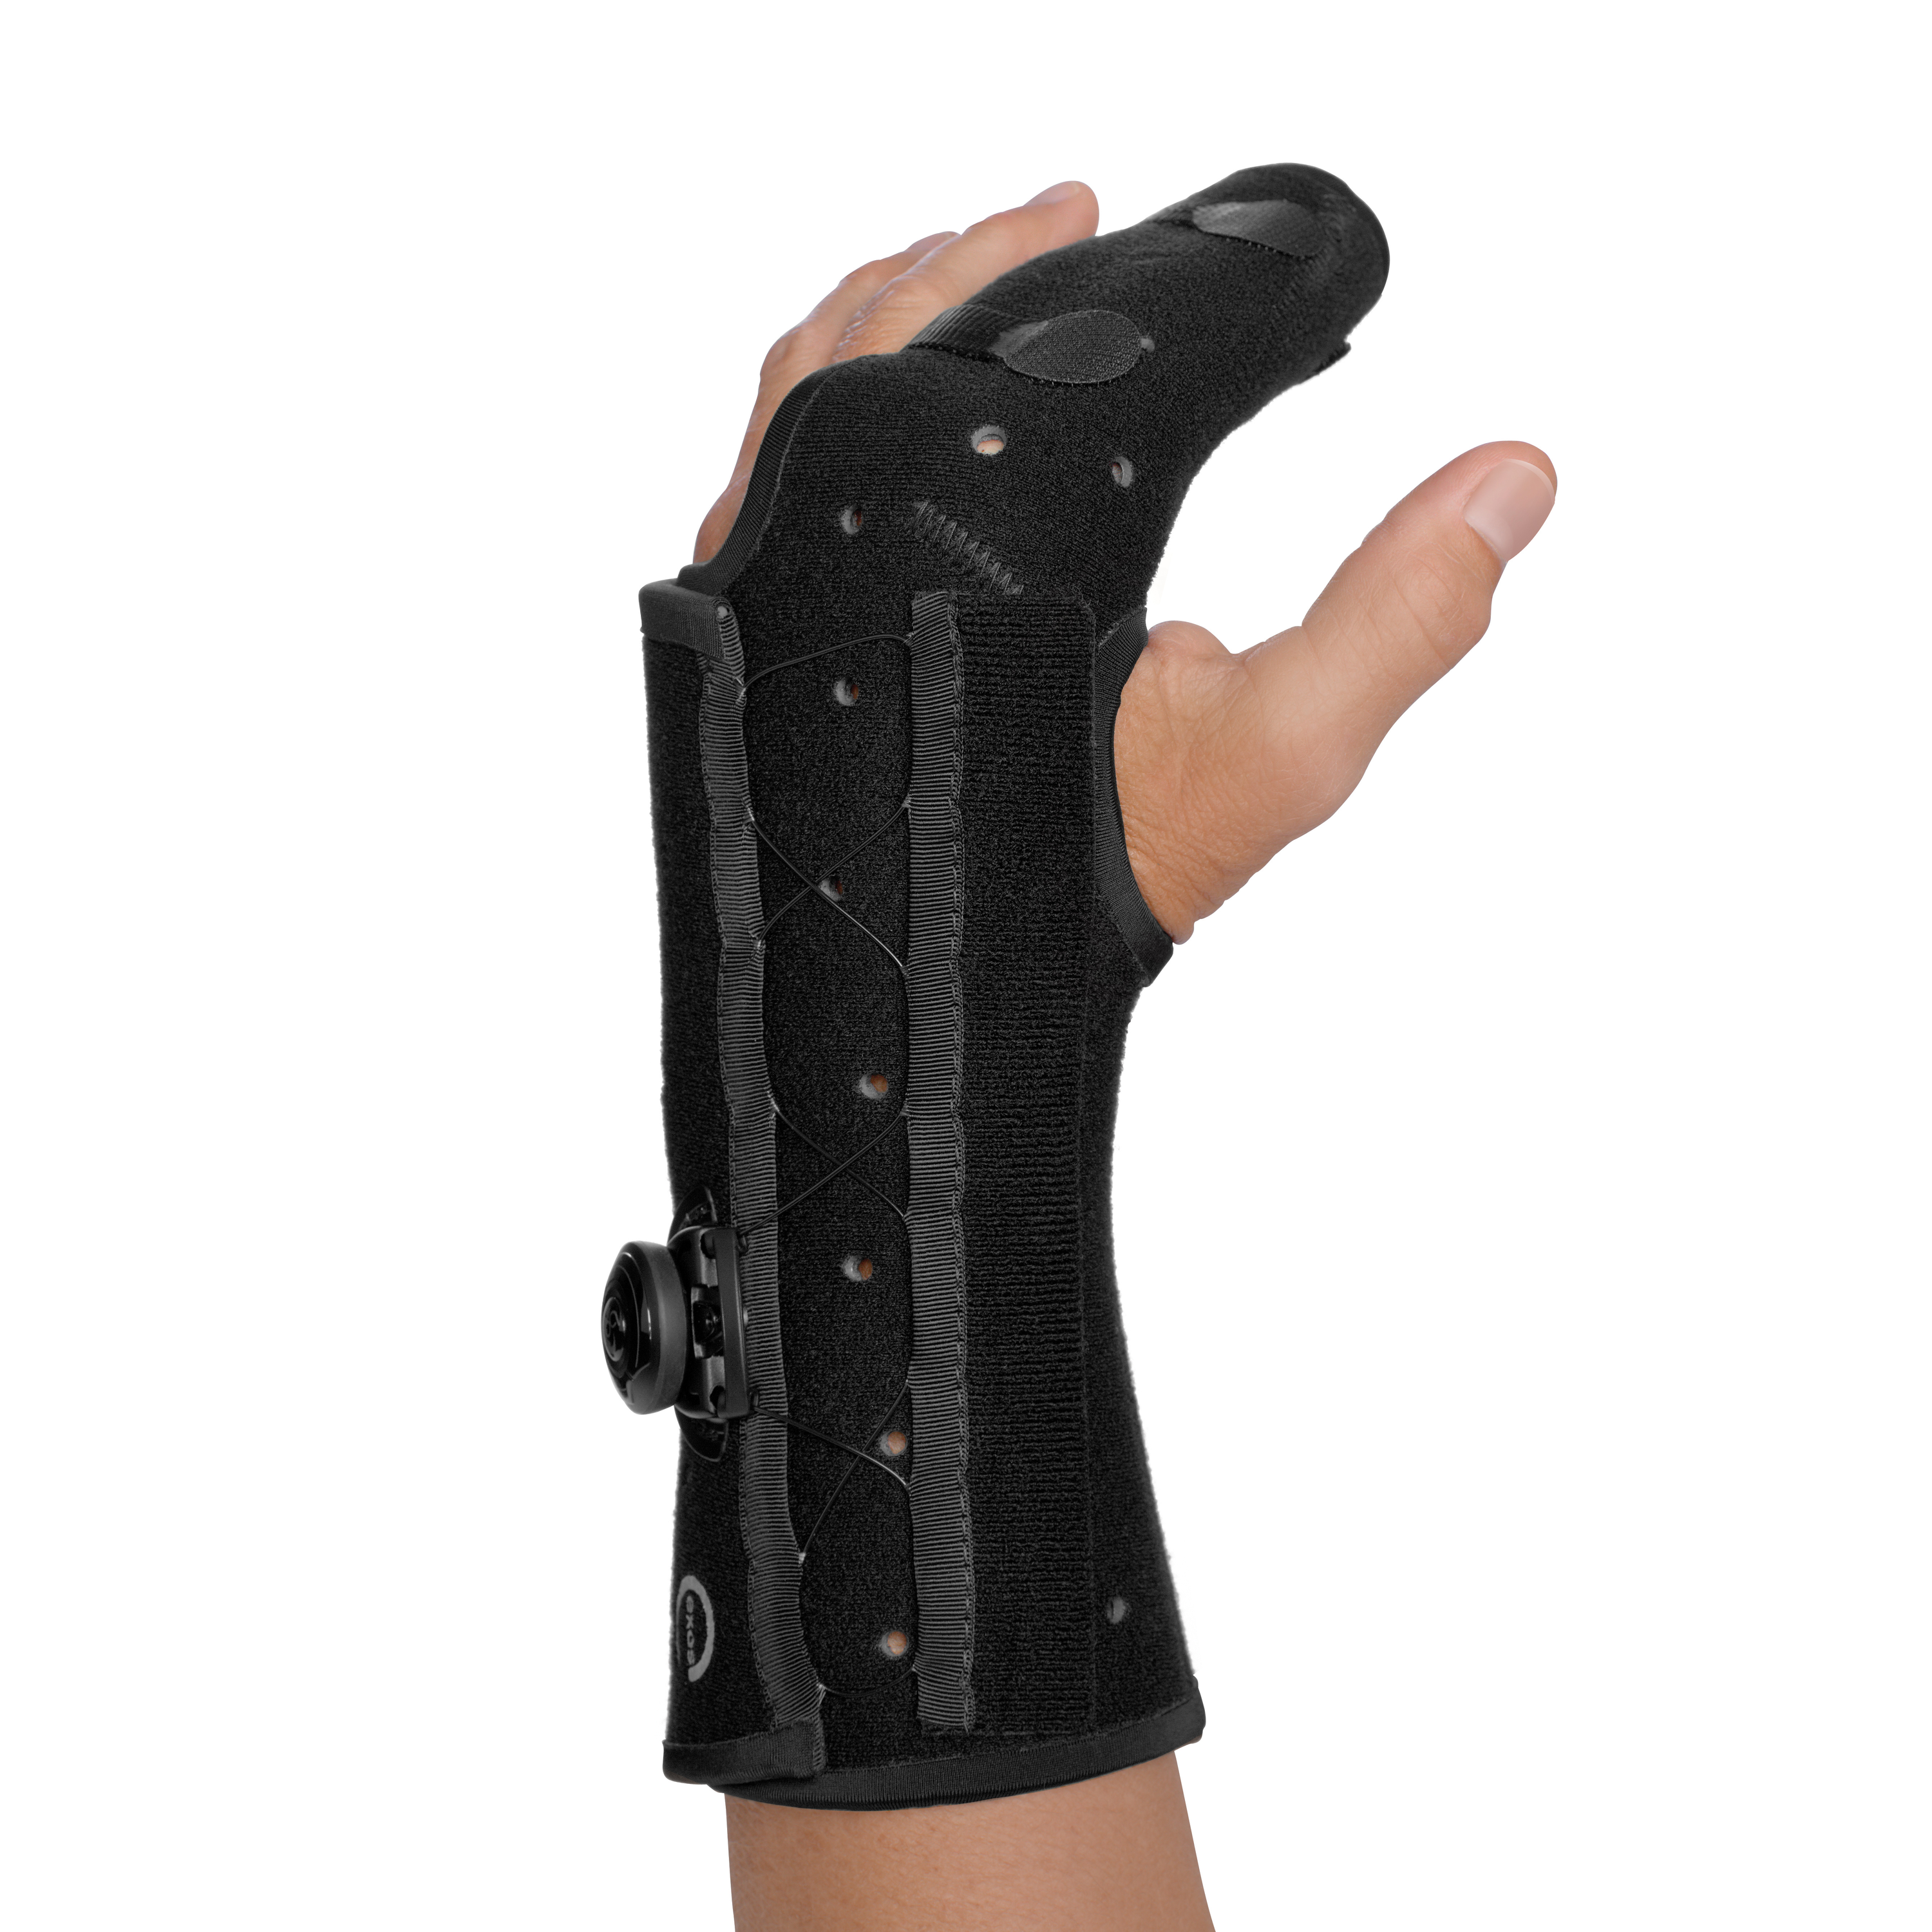 Produktbild EXOS® Hand-/Unterarmorthese mit Fixierung der Finger 2 & 3, mit BOA®, Thermoplastisch verformbare Hand-/Unterarmorthese zur Immobilisierung der Mittelhand und der Finger 2 & 3